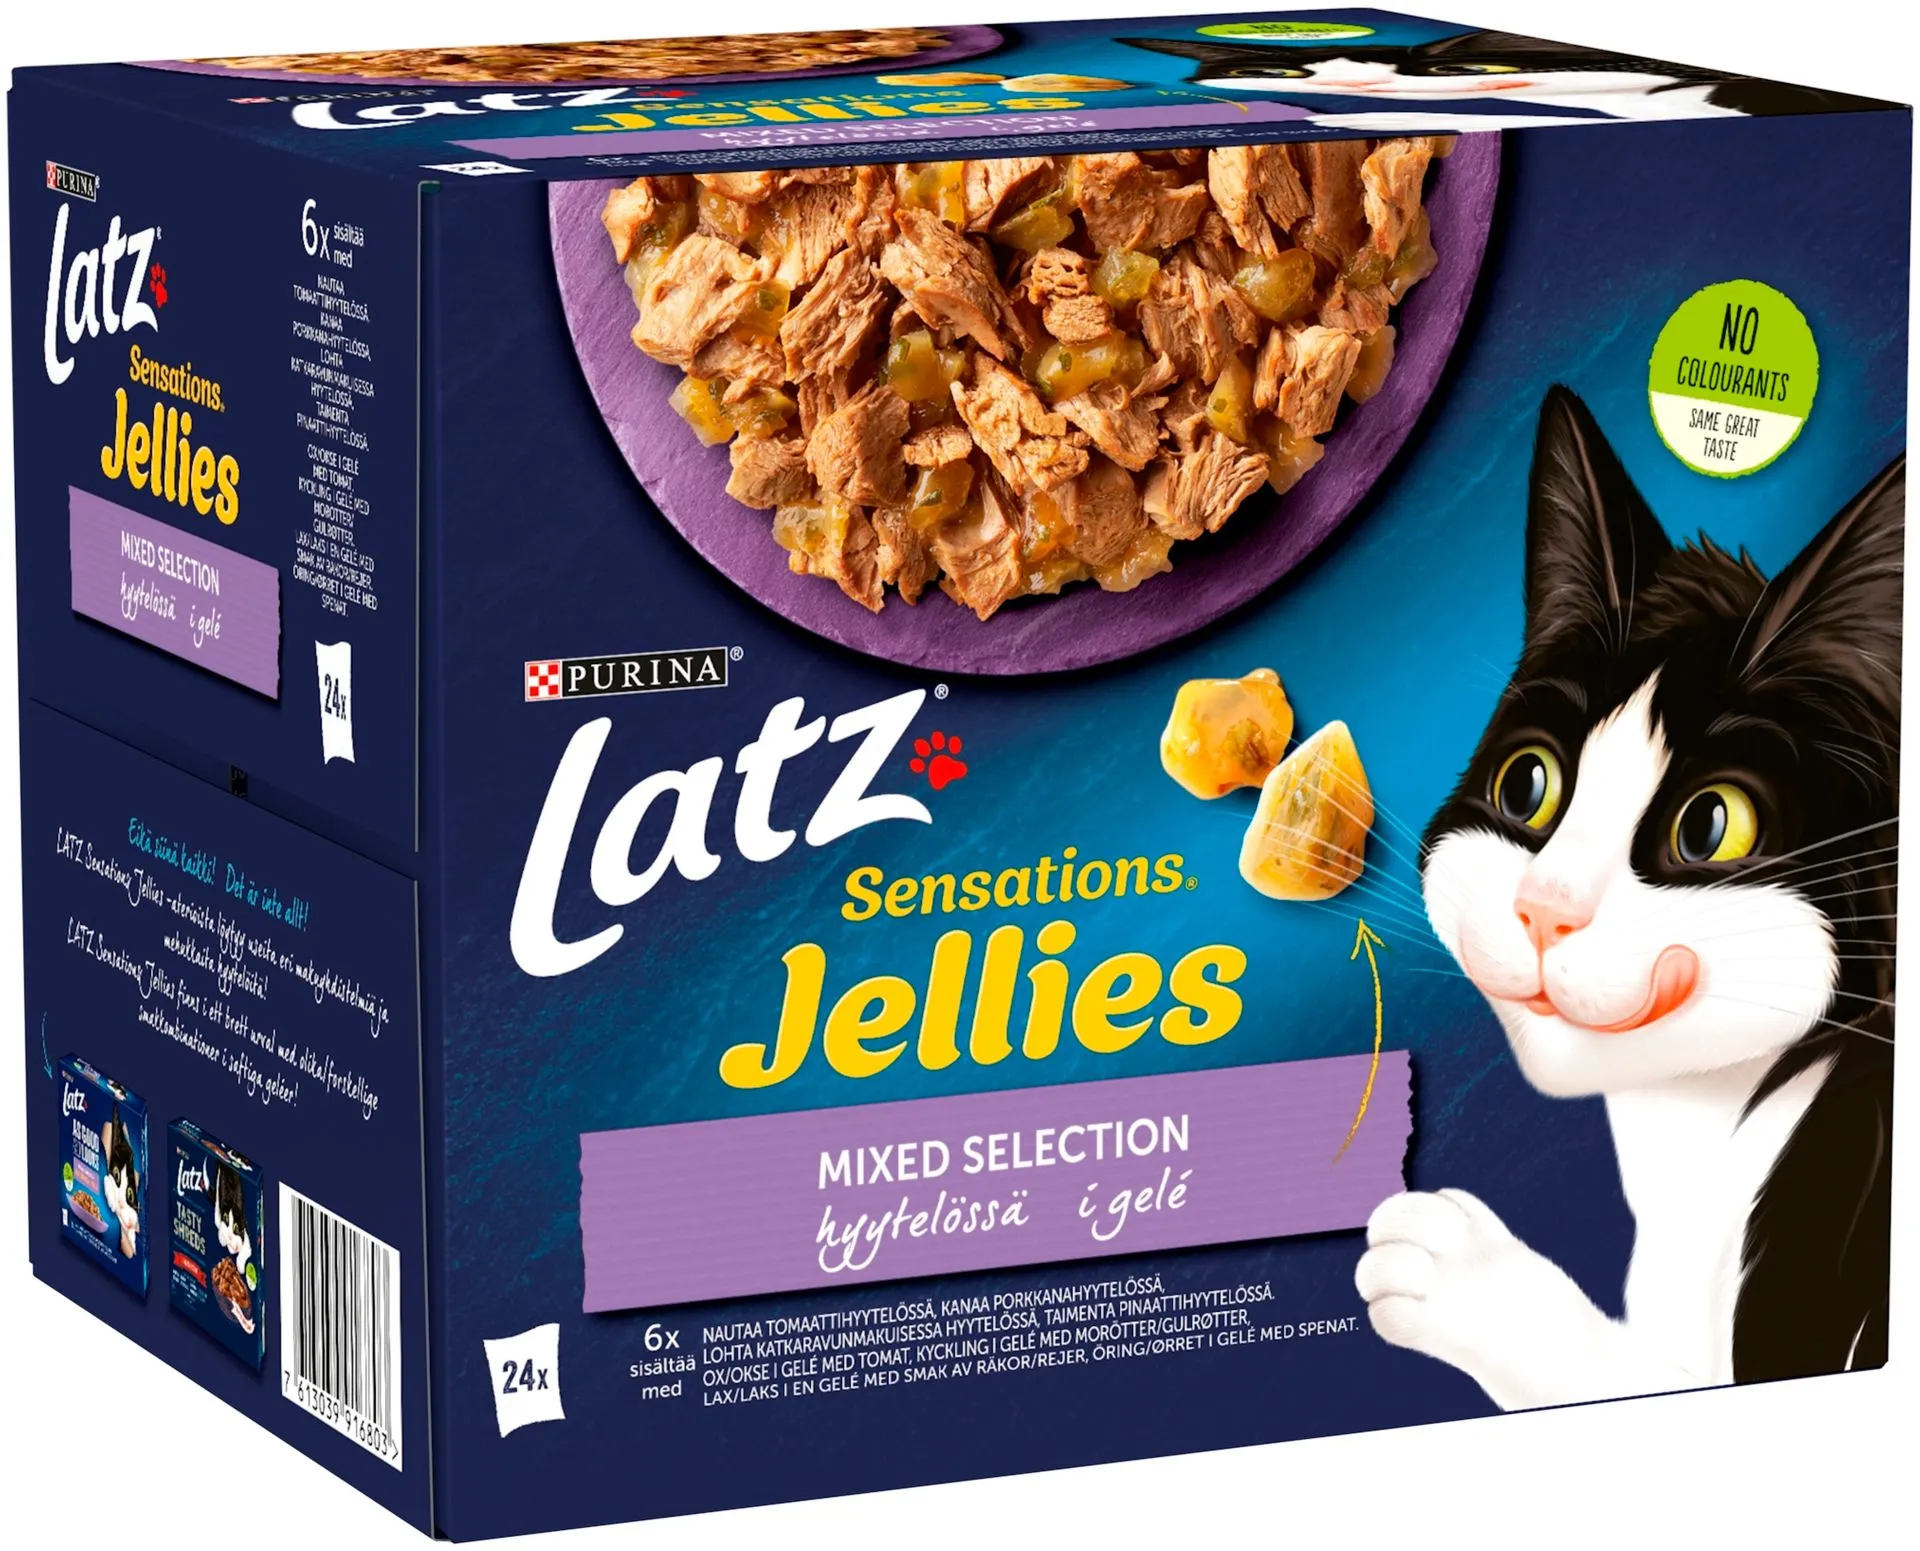 Latz Sensations Jellies 24x85g Mixed lajitelma hyytelössä 4 varianttia kissanruoka